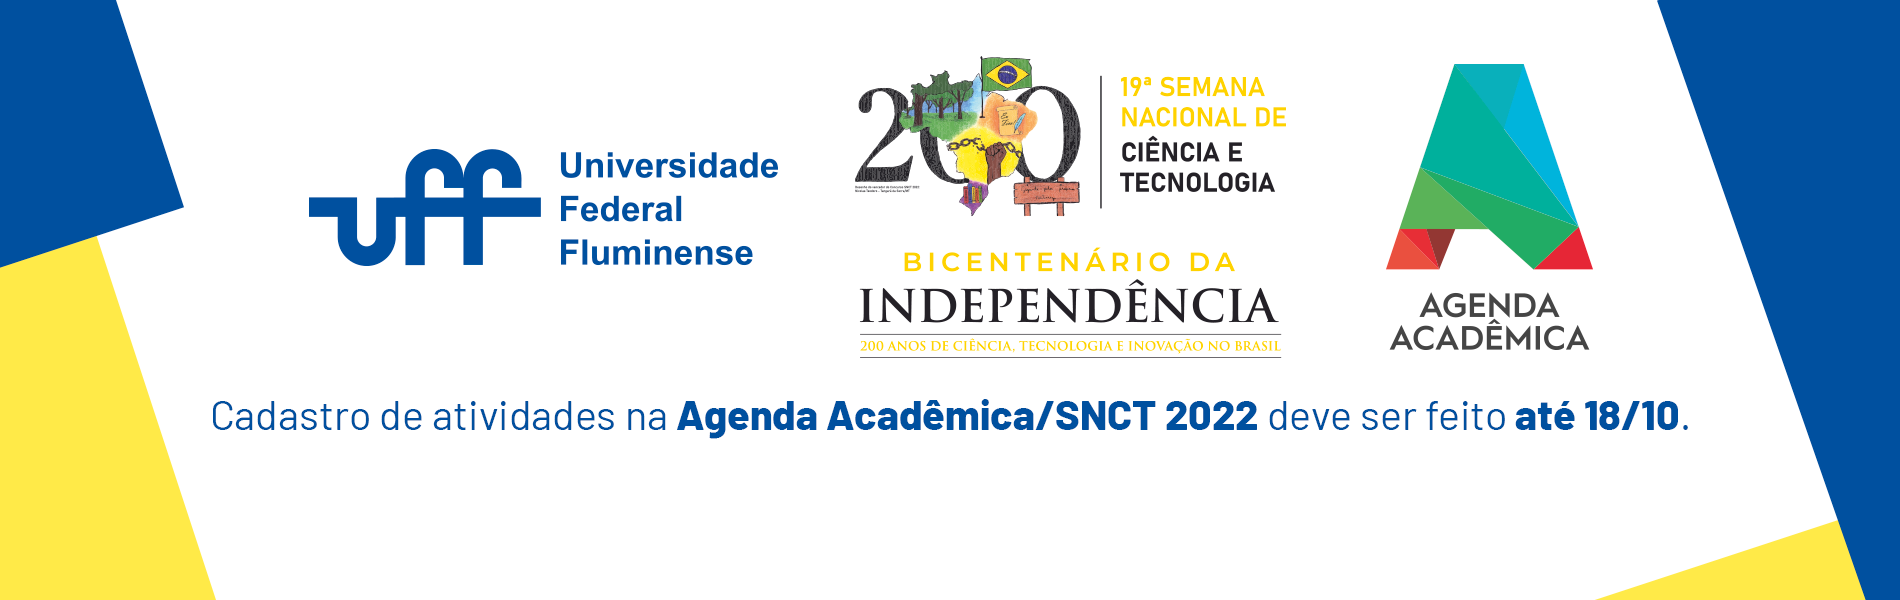 banner com os logos da UFF, SCNT 2022 e da Agenda academica; E uma chamada para inscrição de atividades no evento